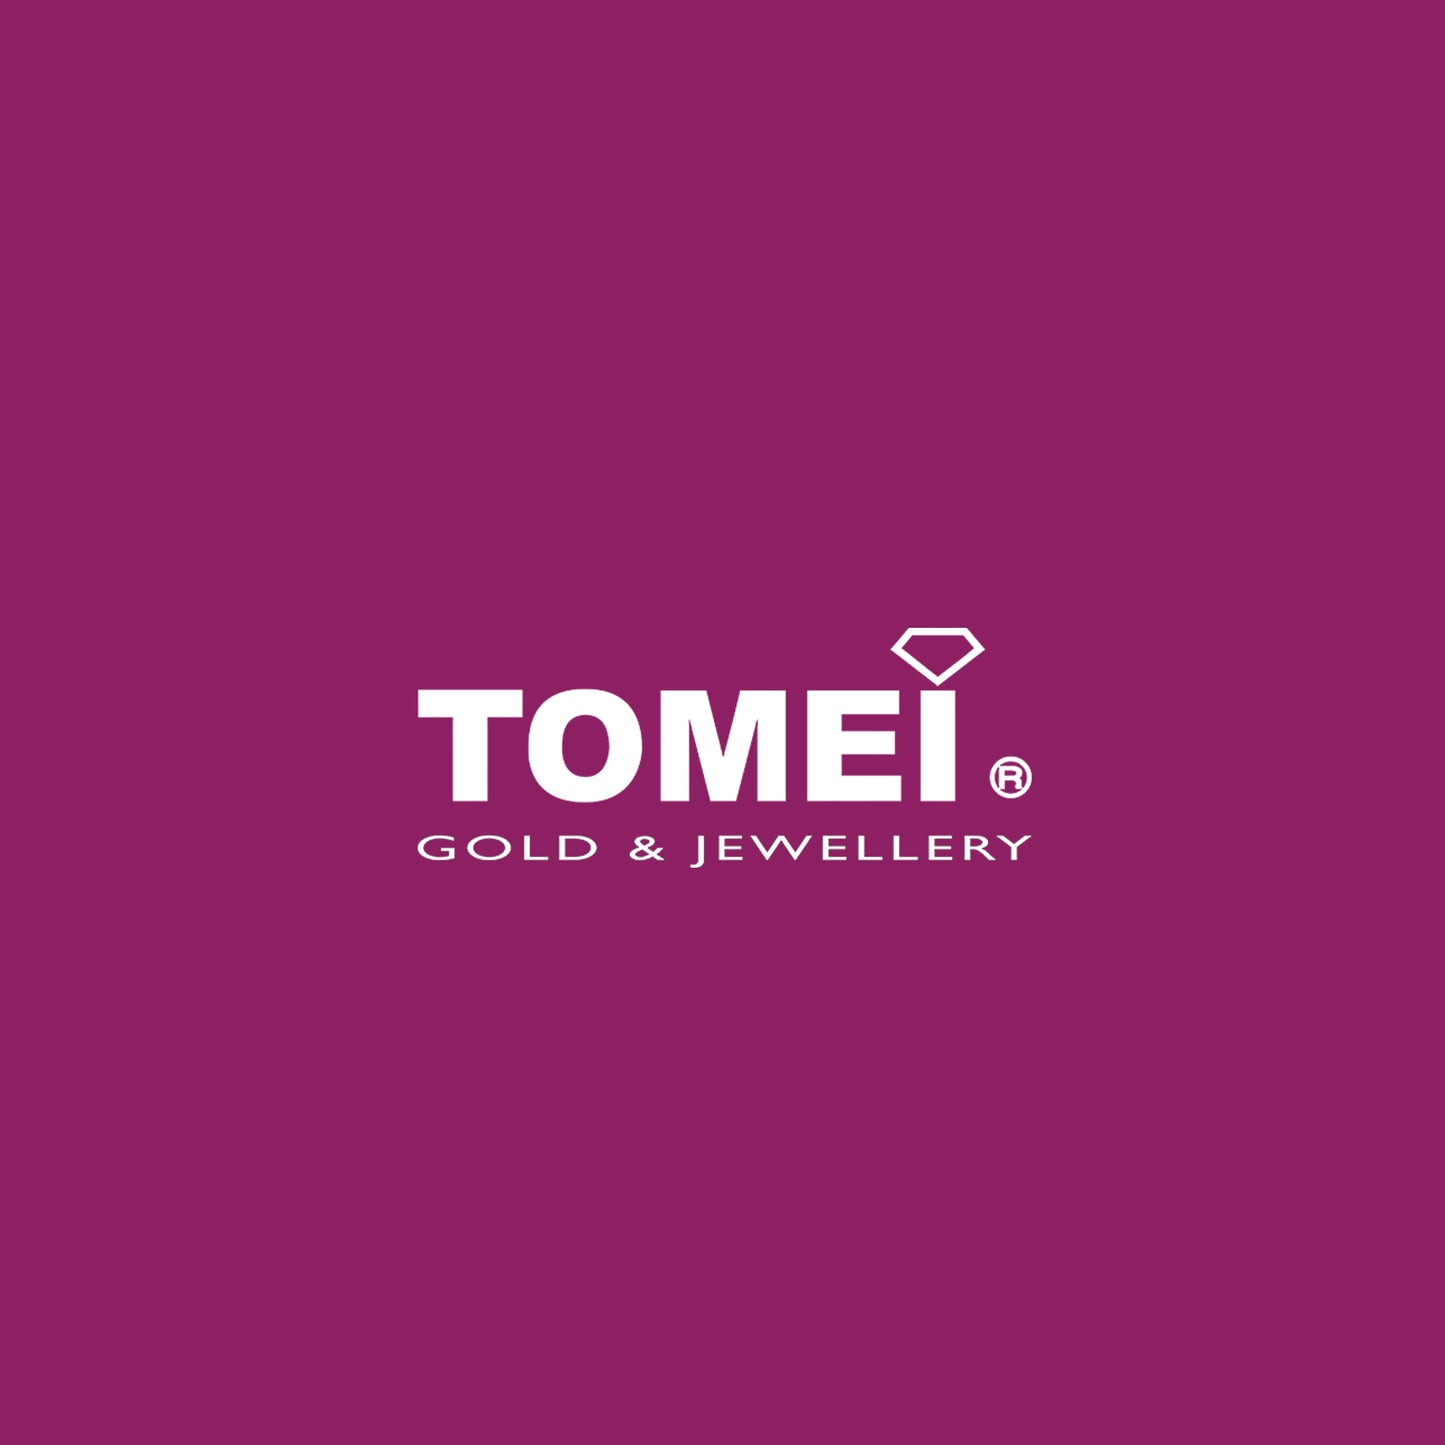 TOMEI Pizzazz in Glittering Splendour Ring, Diamond White Gold 375 (R3291)